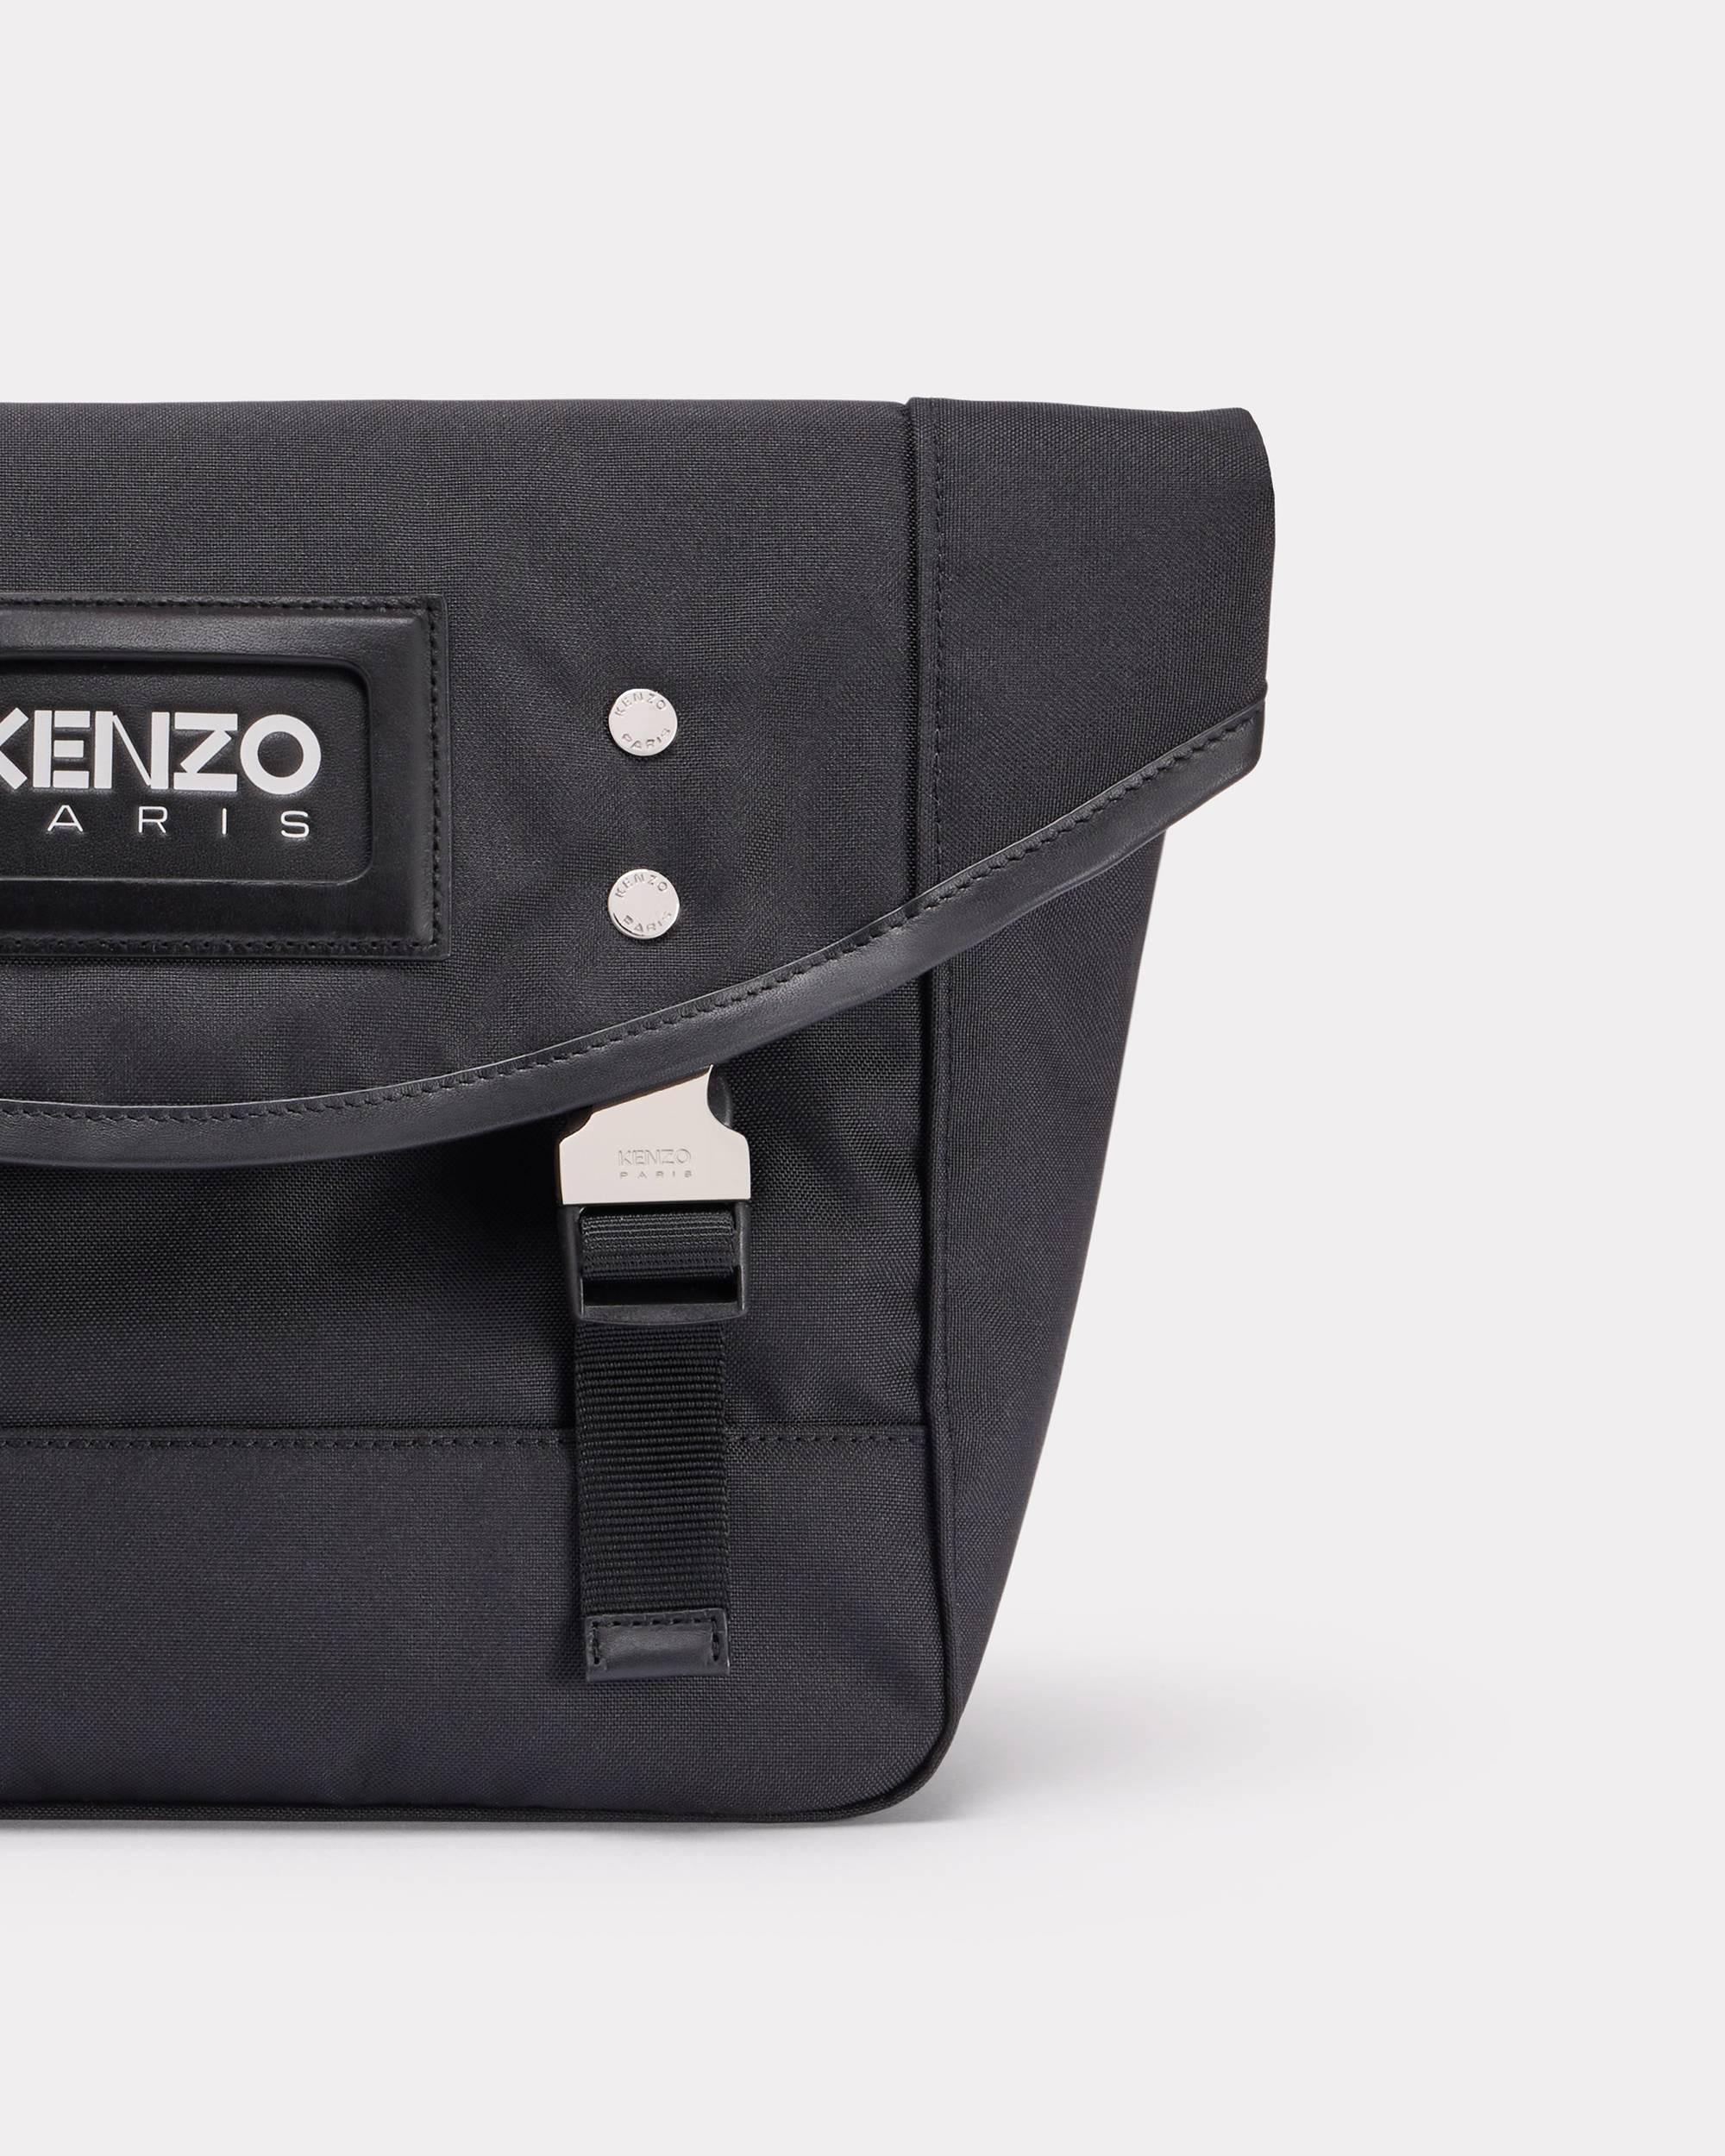 'KENZOGRAPHY' bag - 3